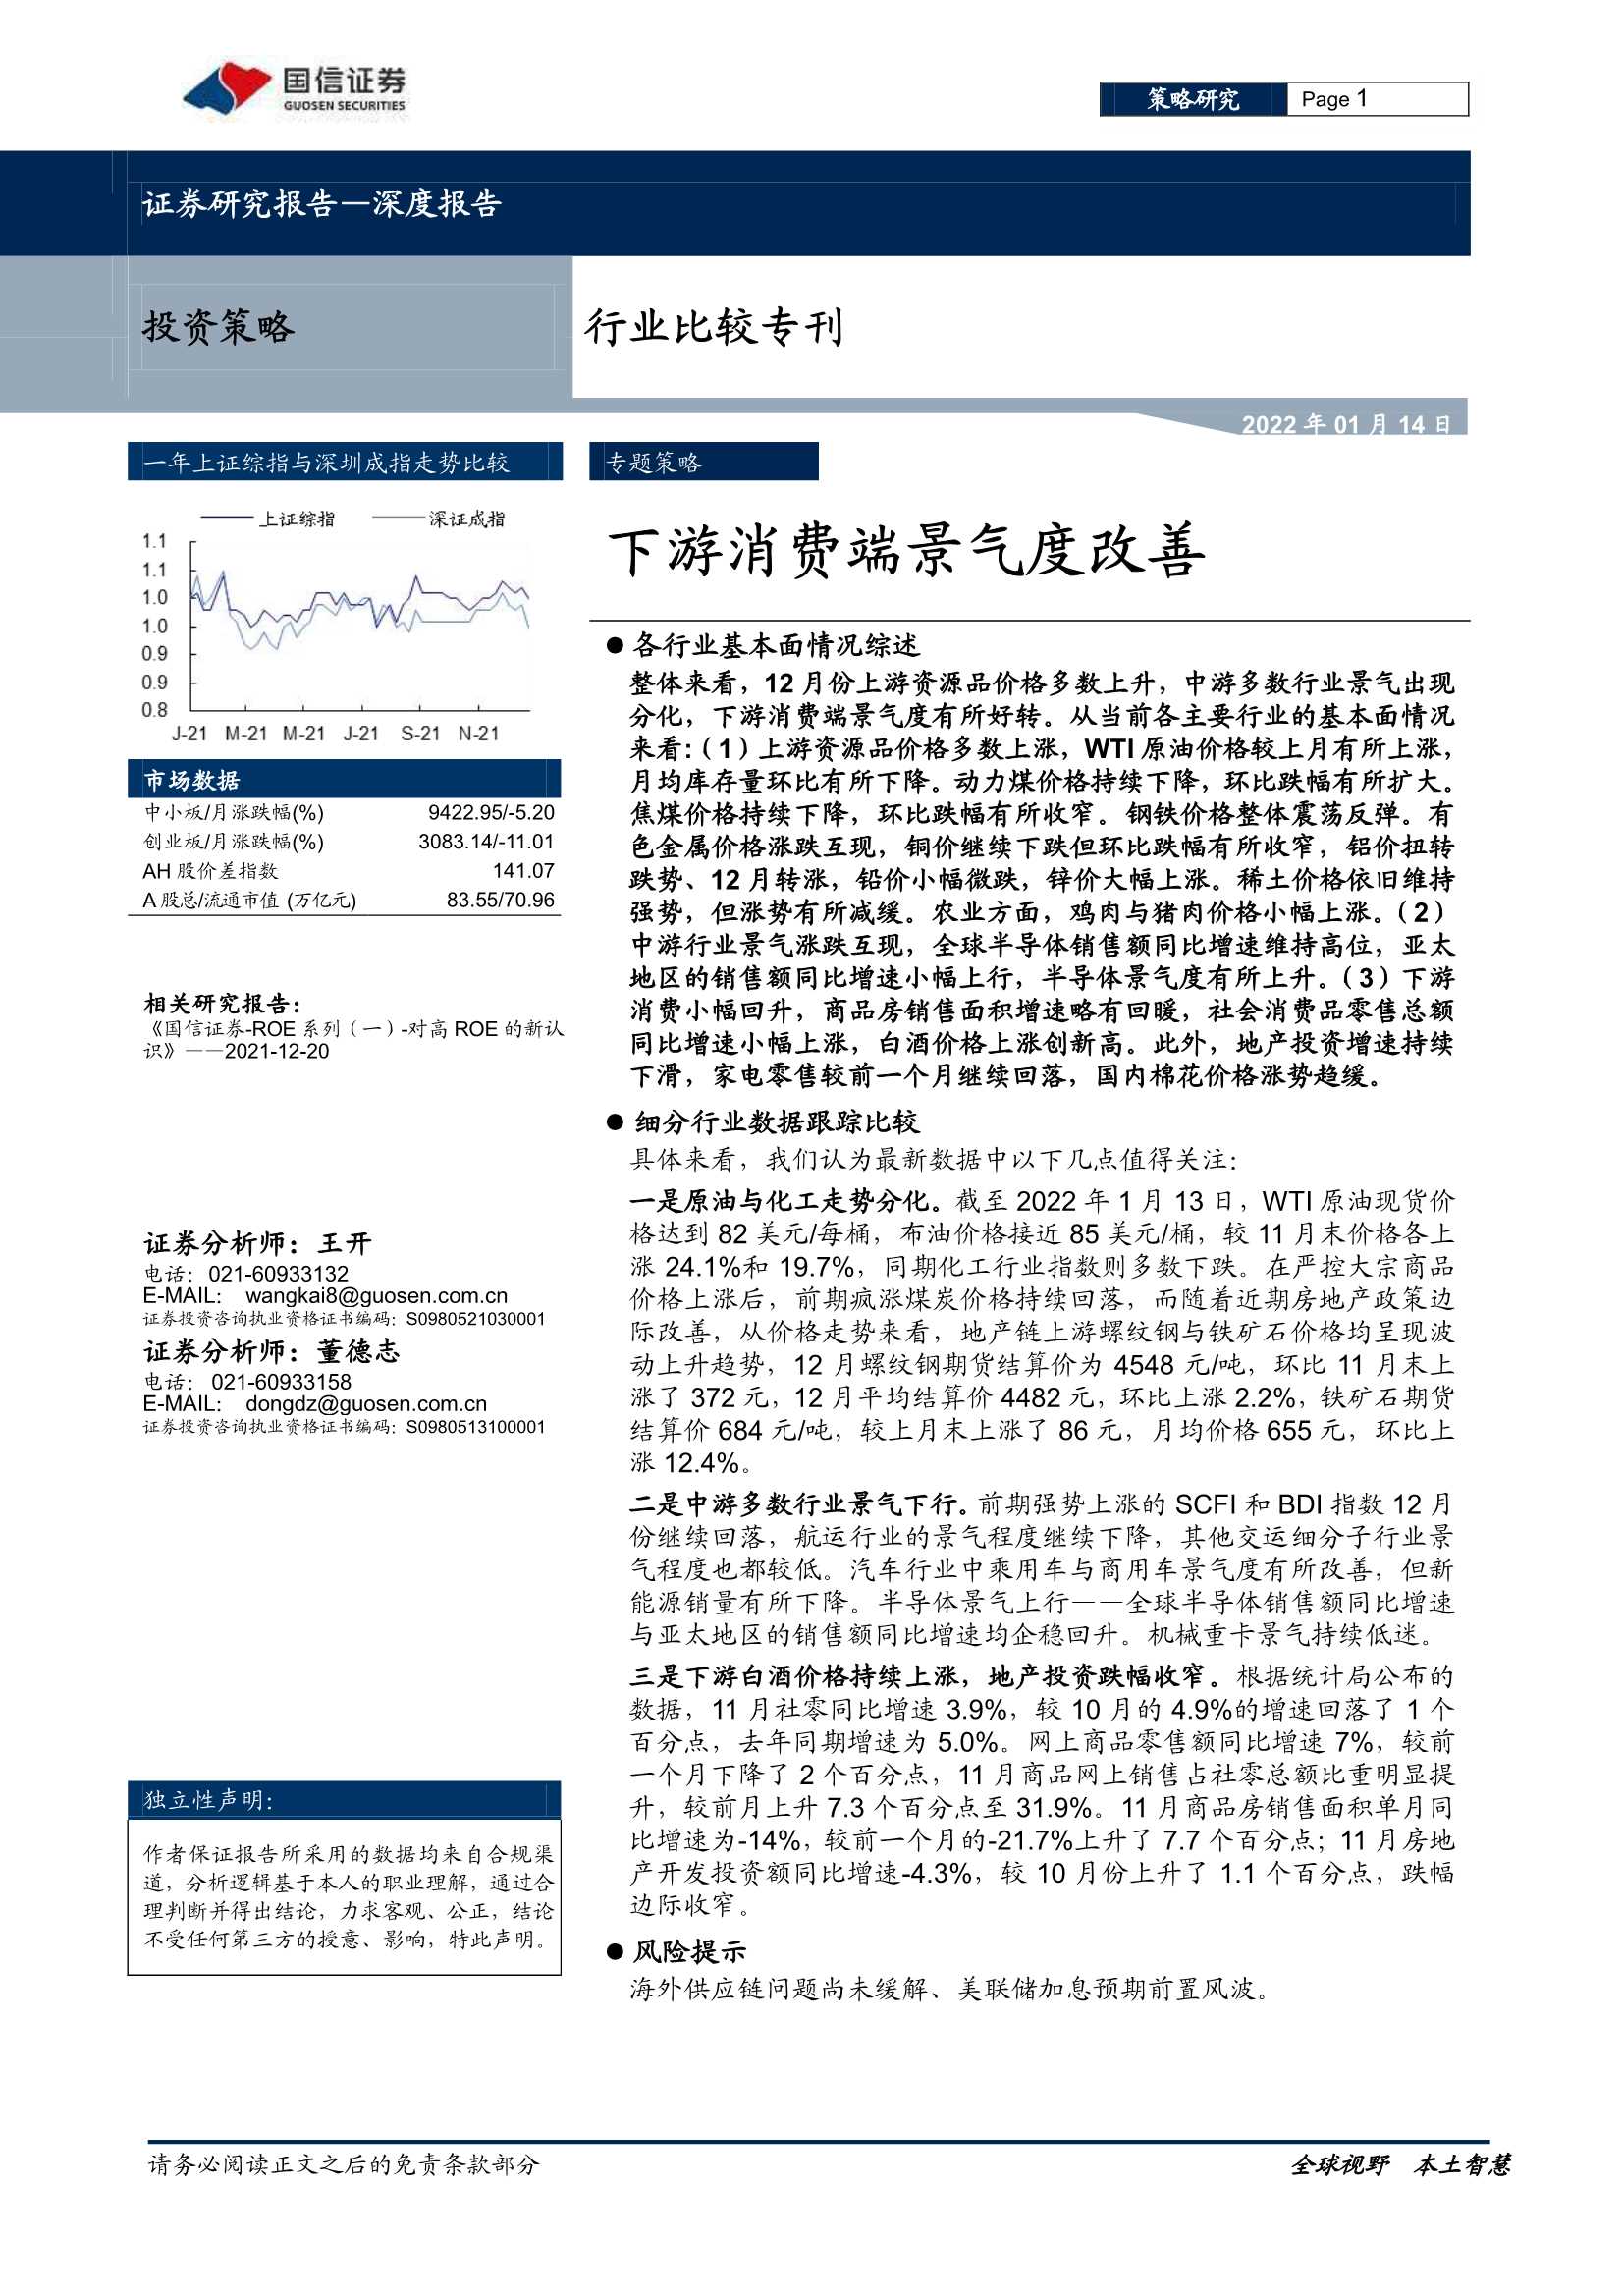 国信证券-行业比较专刊：下游消费端景气度改善-20220114-26页